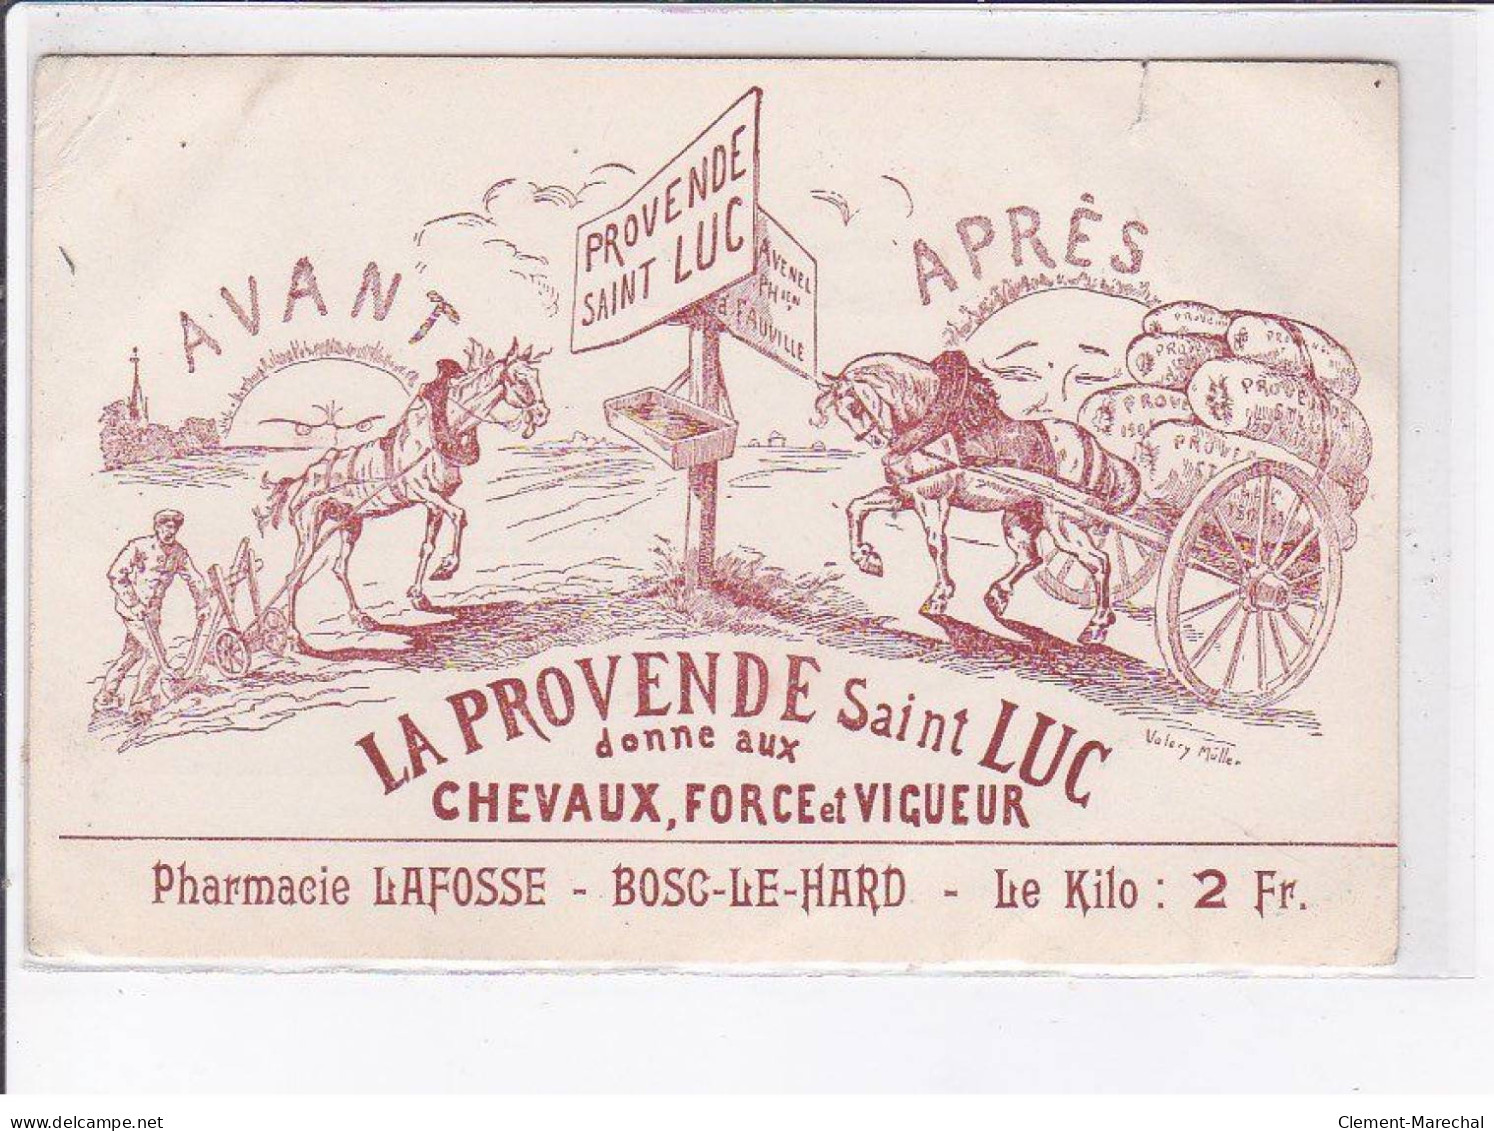 PUBLICITE: La Provende Saint-luc Donne Aux Chevaux, Force Et Vigueur, Pharmacie Lafosse, Bosc-le-hard - état - Reclame